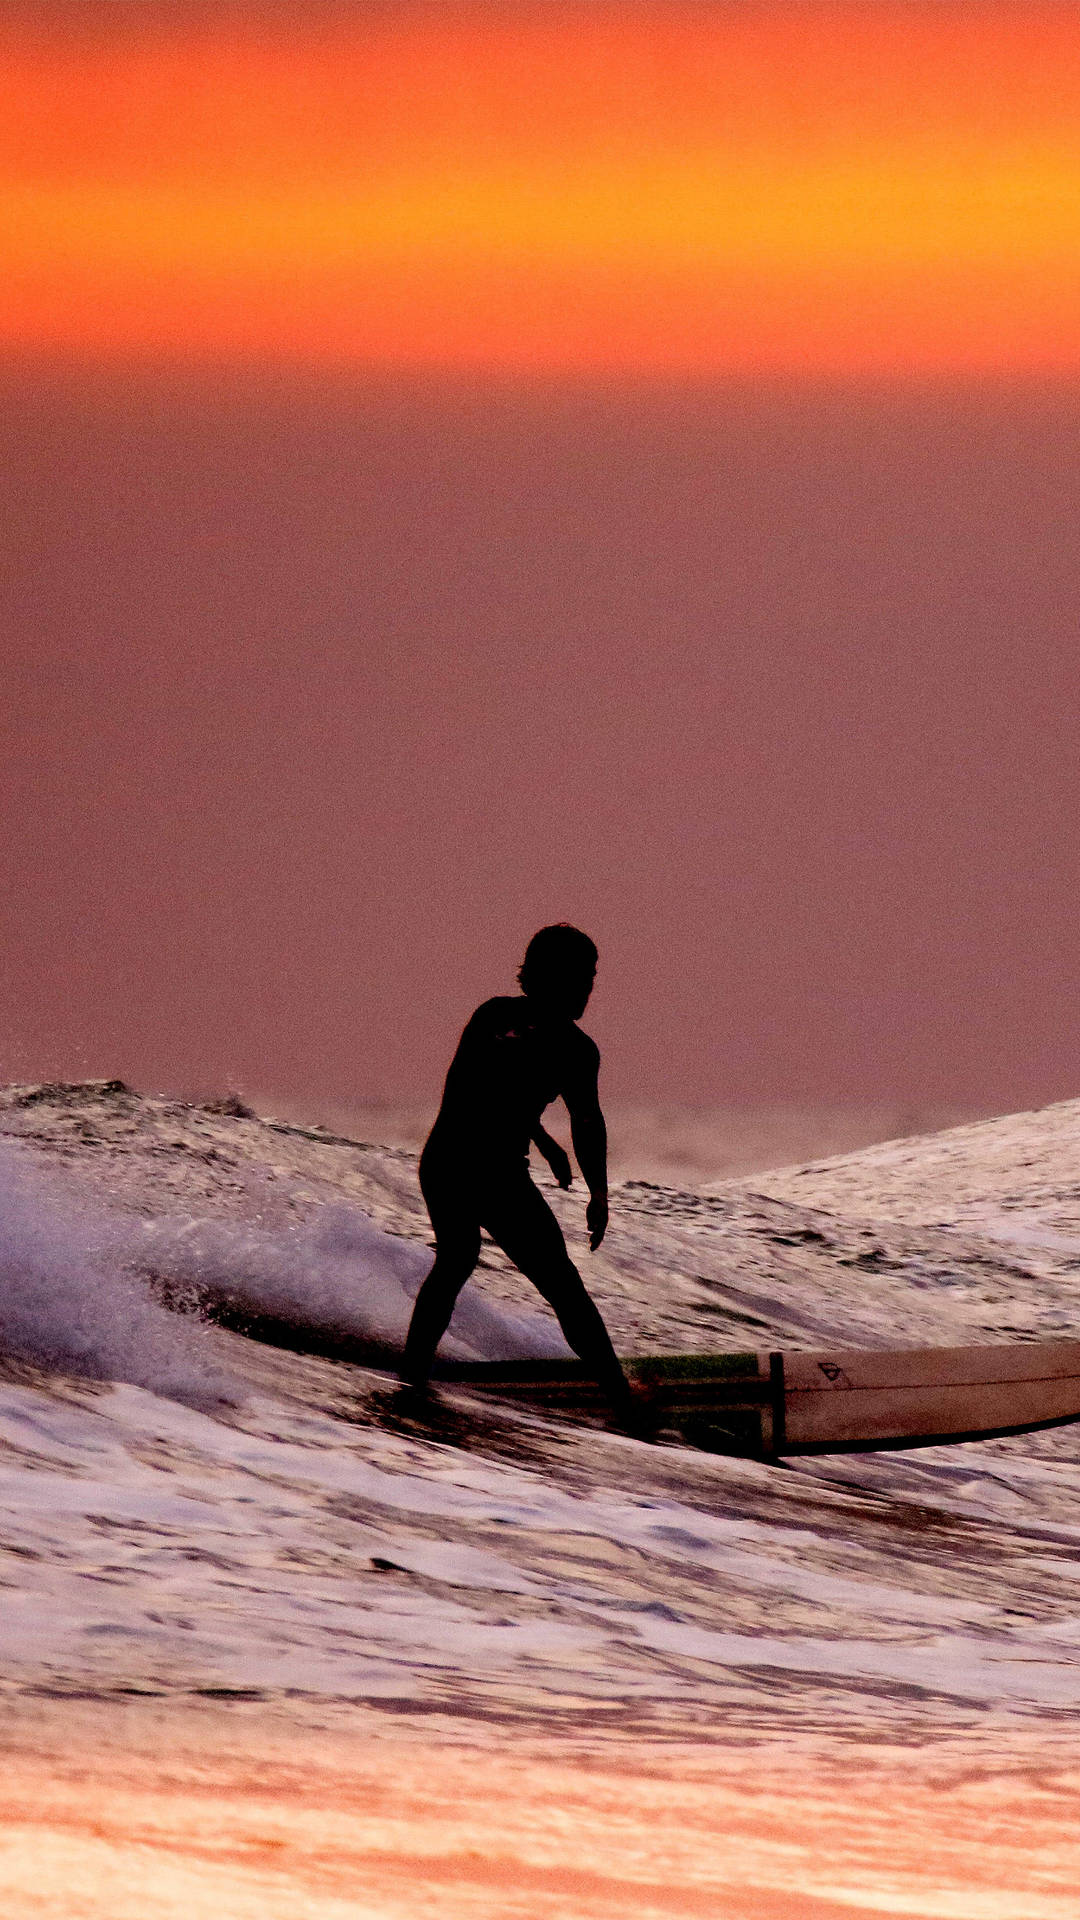 Surfing Under An Orange Sunset Sky